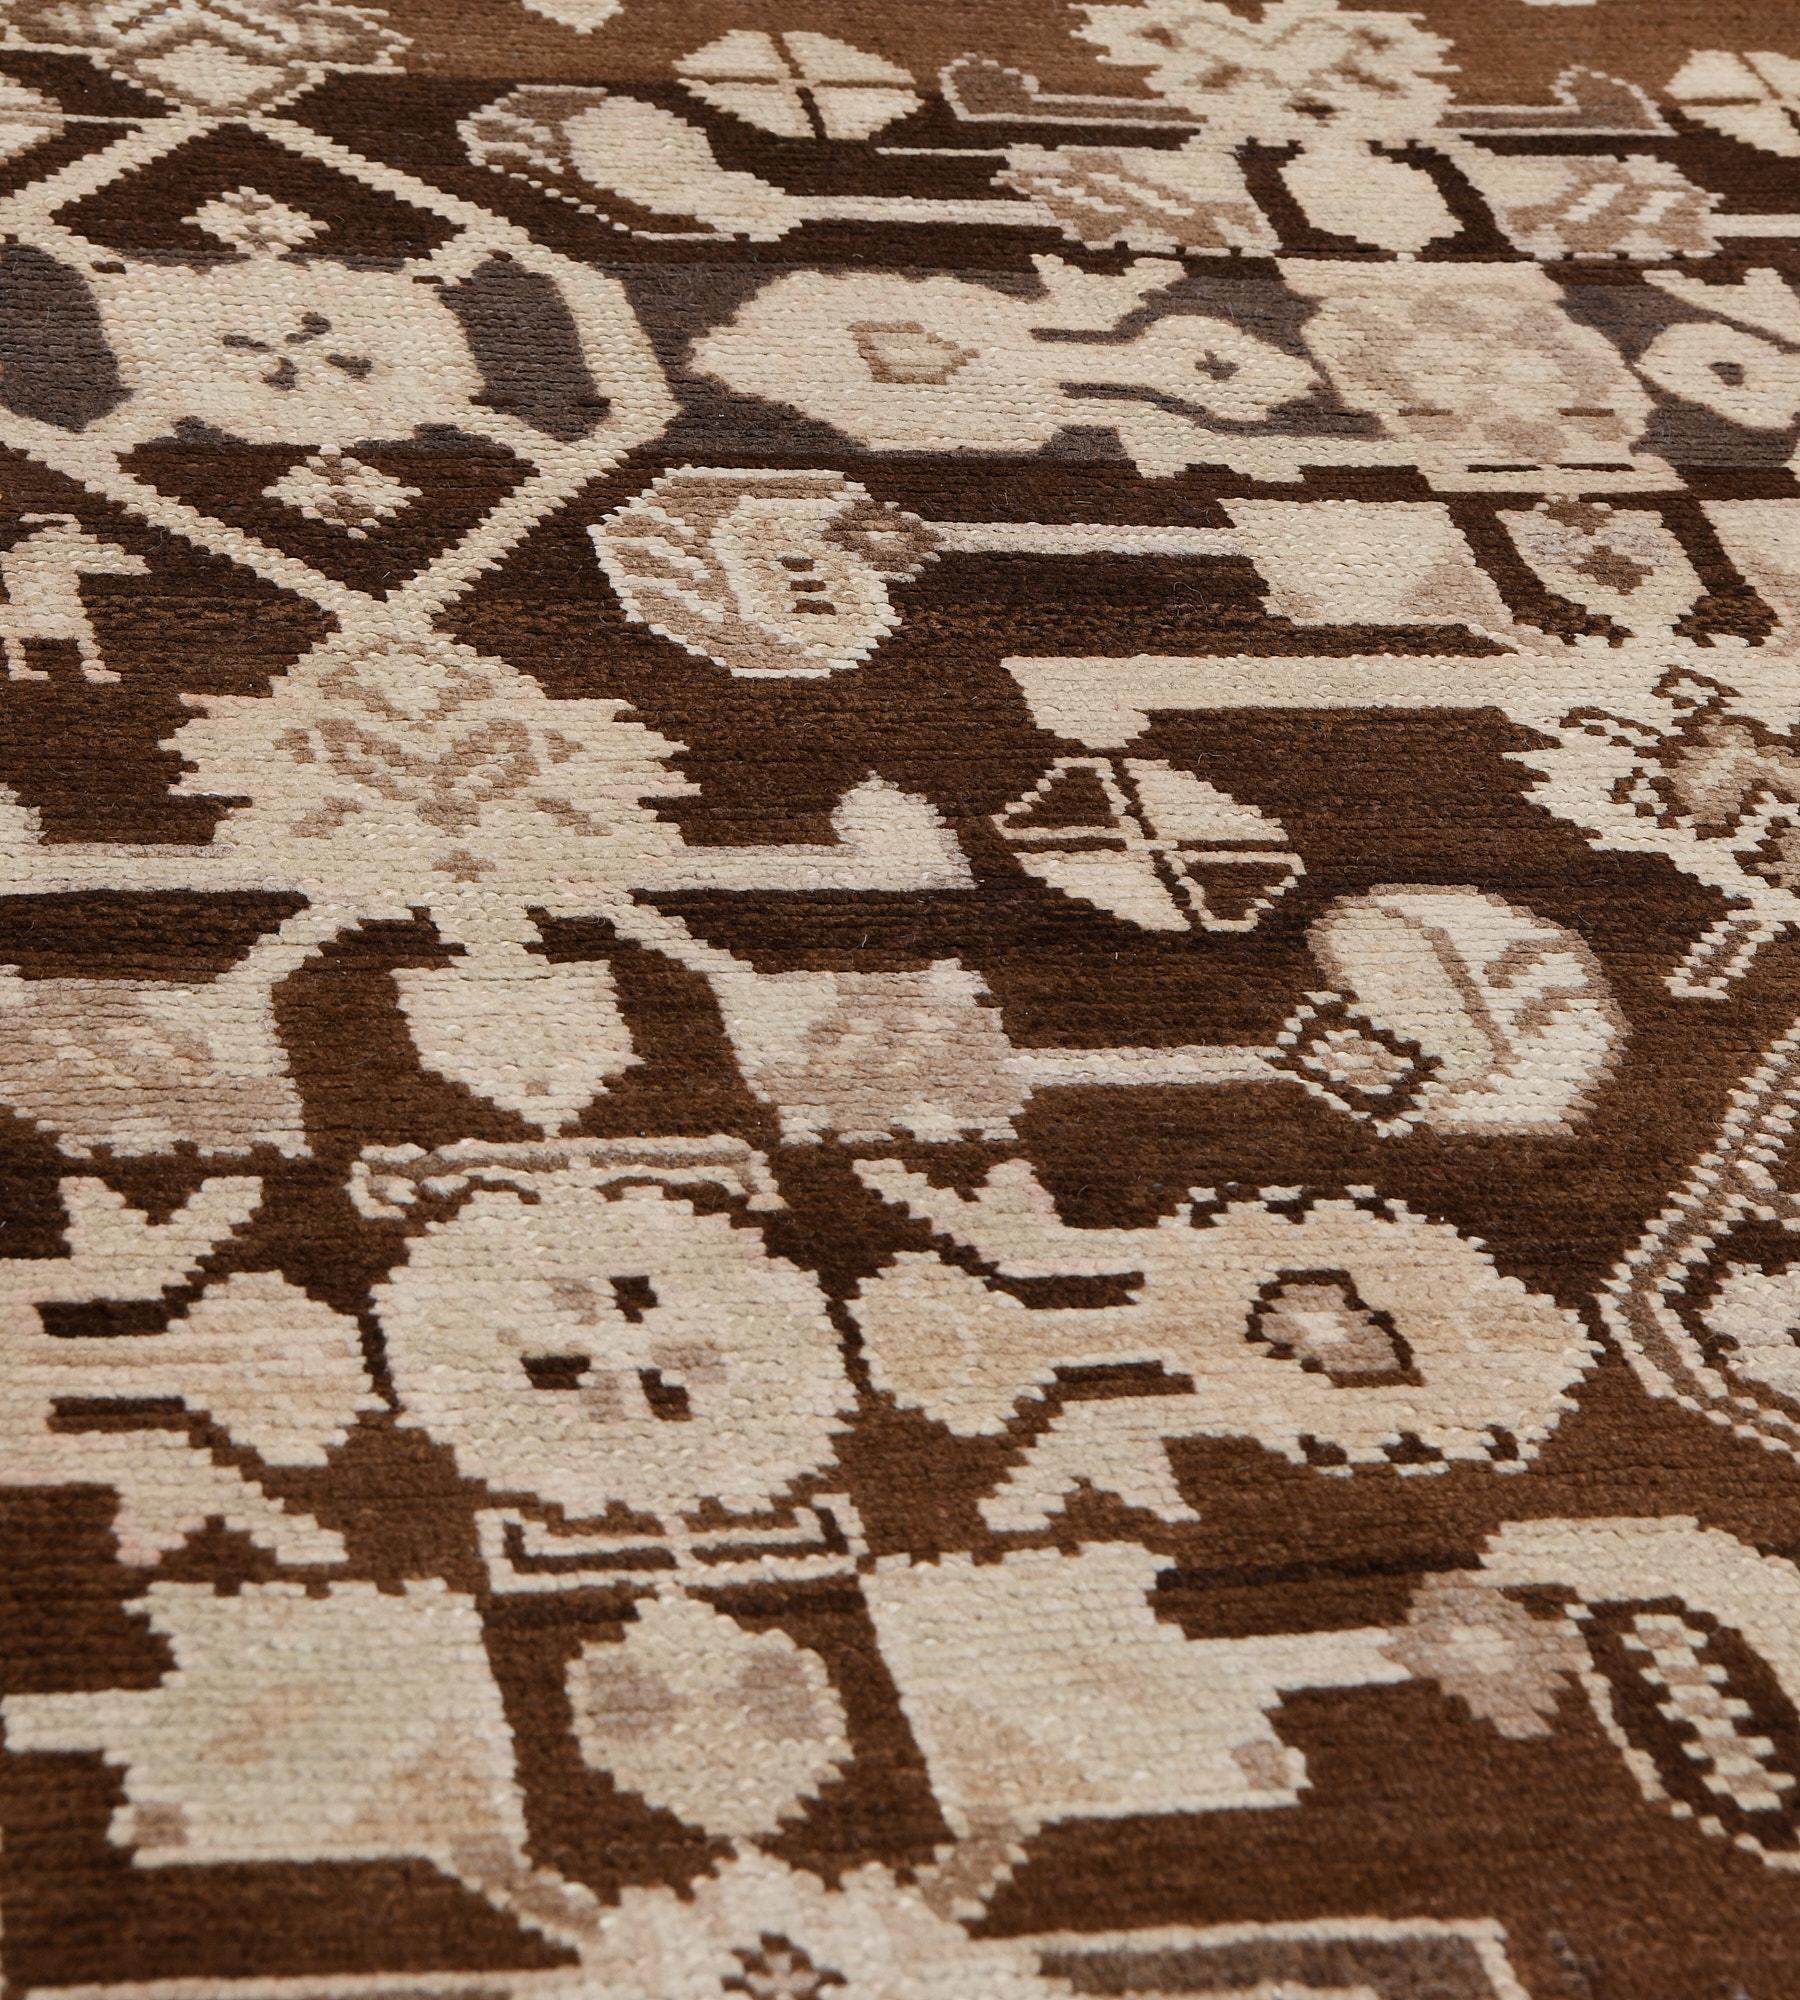 Ce tapis traditionnel persan Karabagh tissé à la main présente un champ tabac foncé avec un motif géométrique herati stylisé contreposé, dans une bordure sable safran avec des motifs floraux géométriques, entre des bandes géométriques, une bande